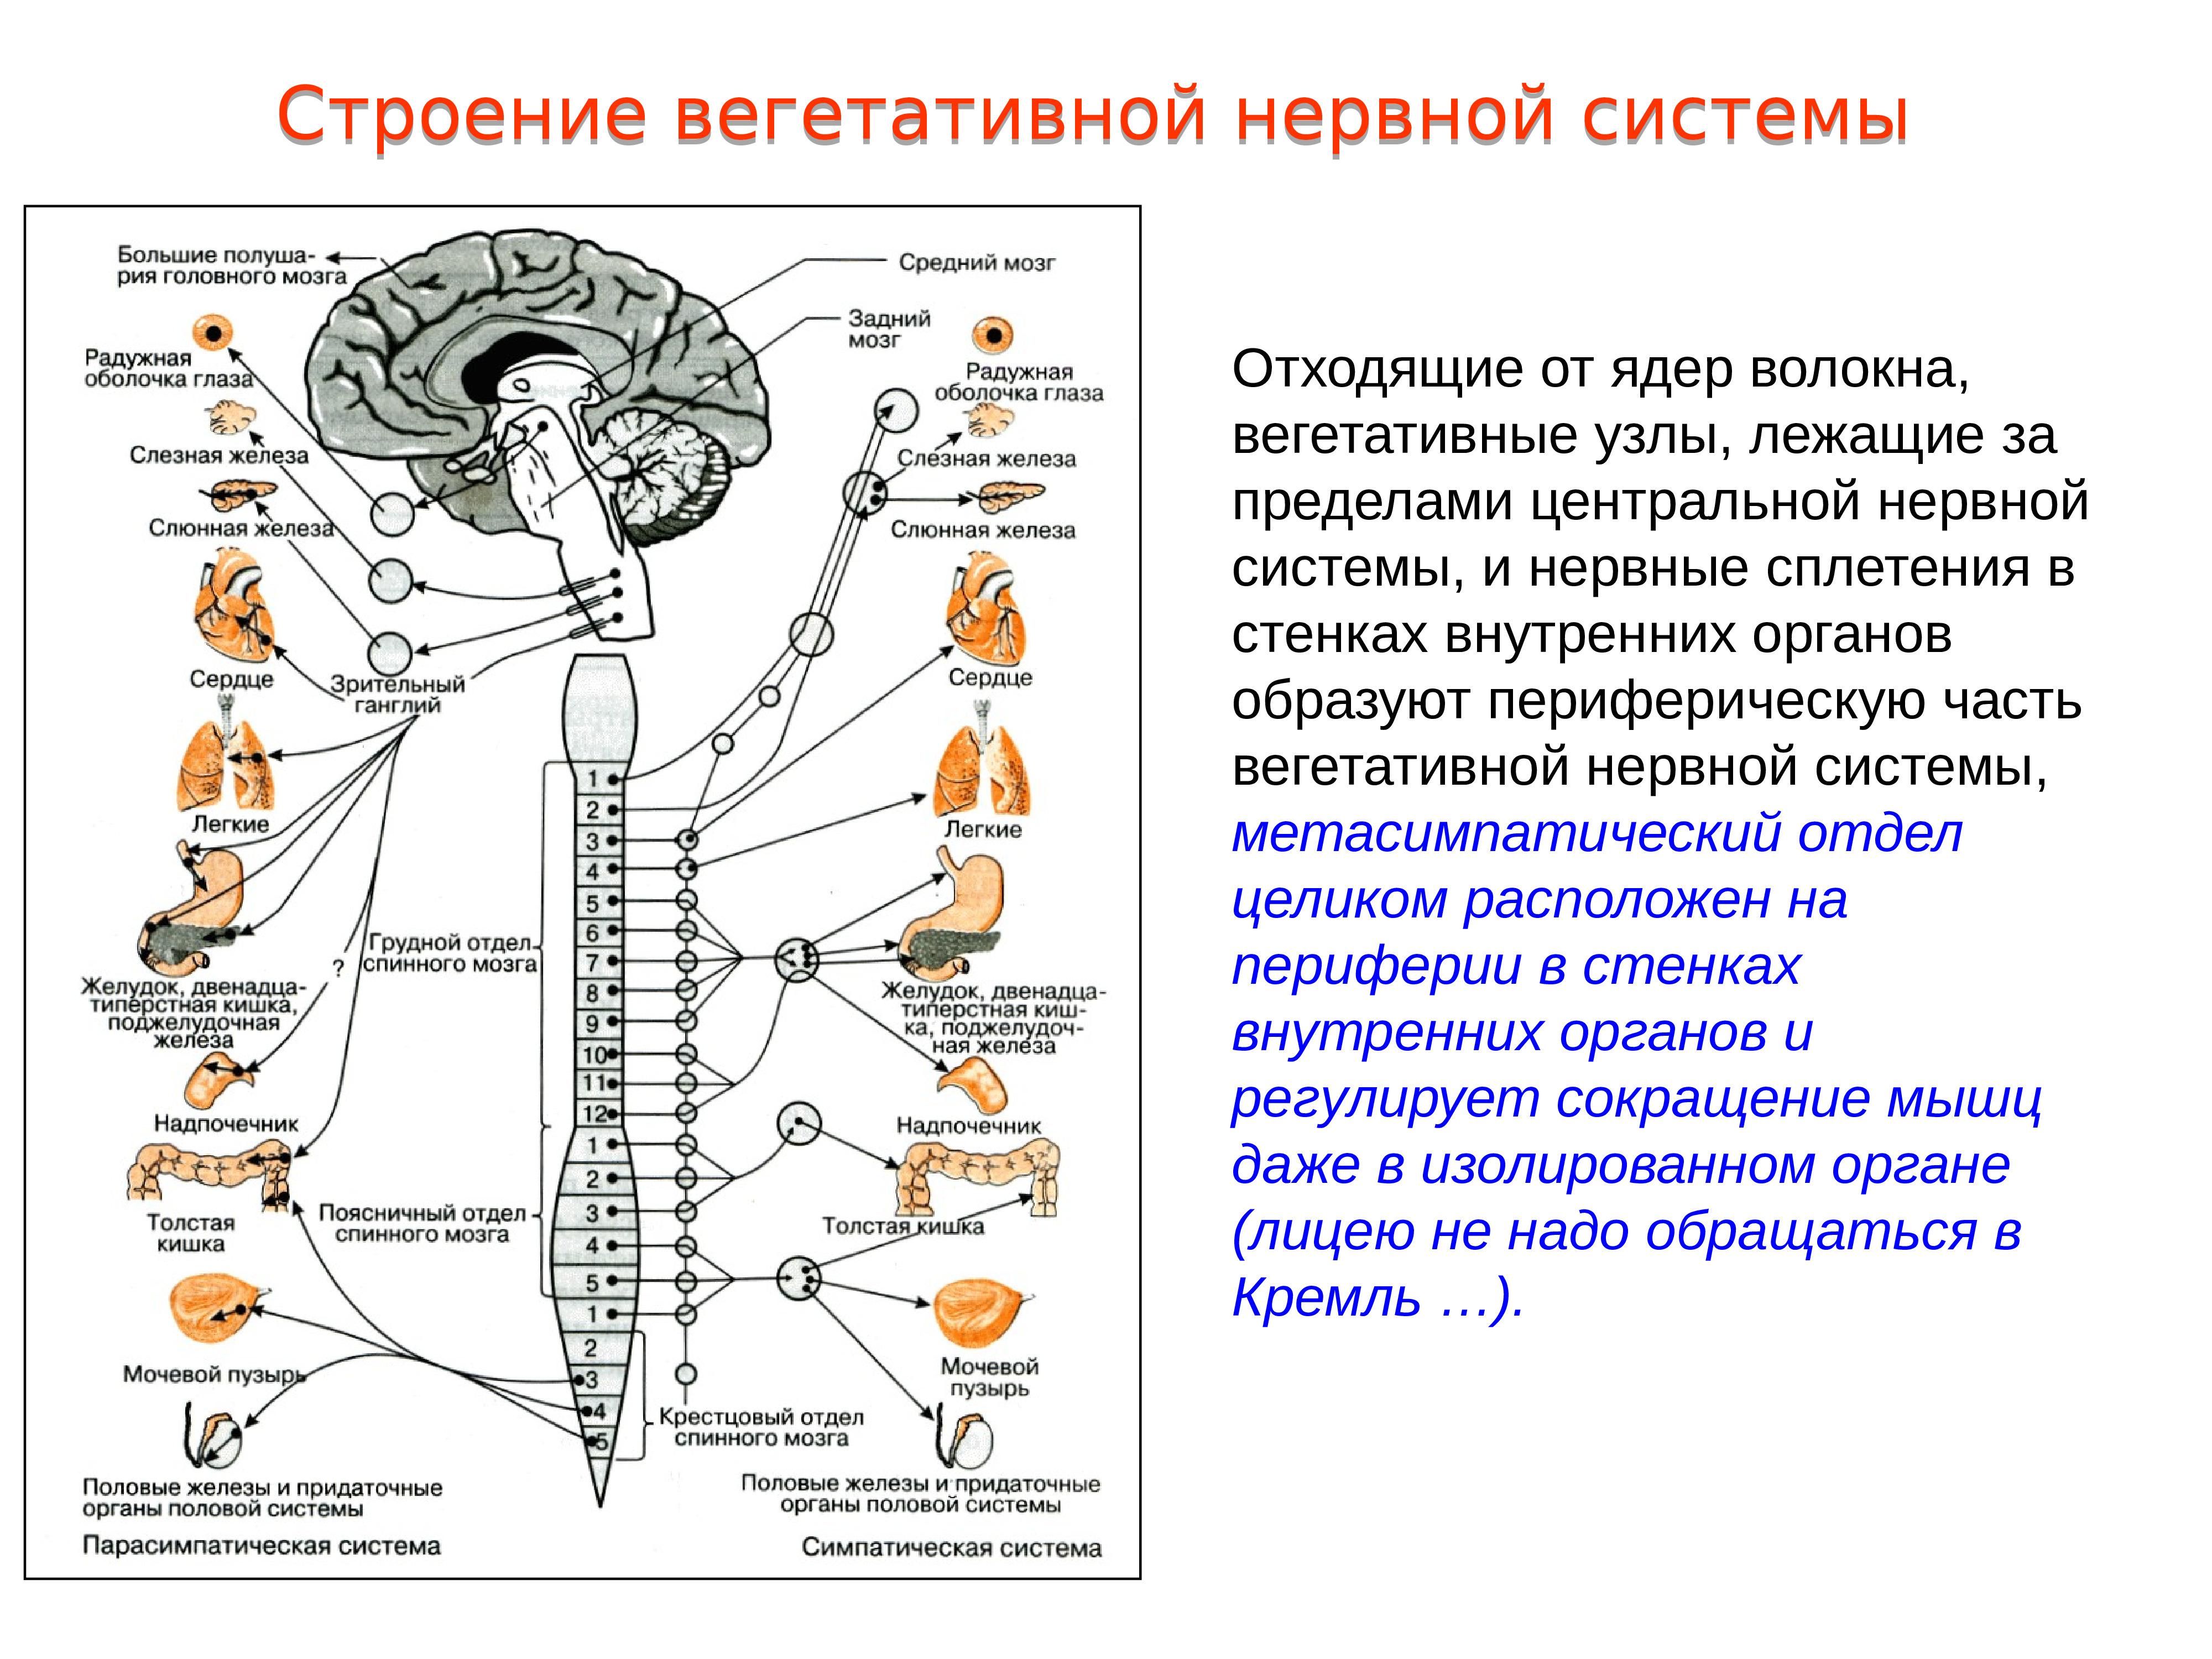 Вегетативные части тела. Строение и функции спинного мозга вегетативная нервная система. Вегетативная автономная нервная система функции. Иннервация органов вегетативной нервной системы. Автономная нервная система симпатическая и парасимпатическая.